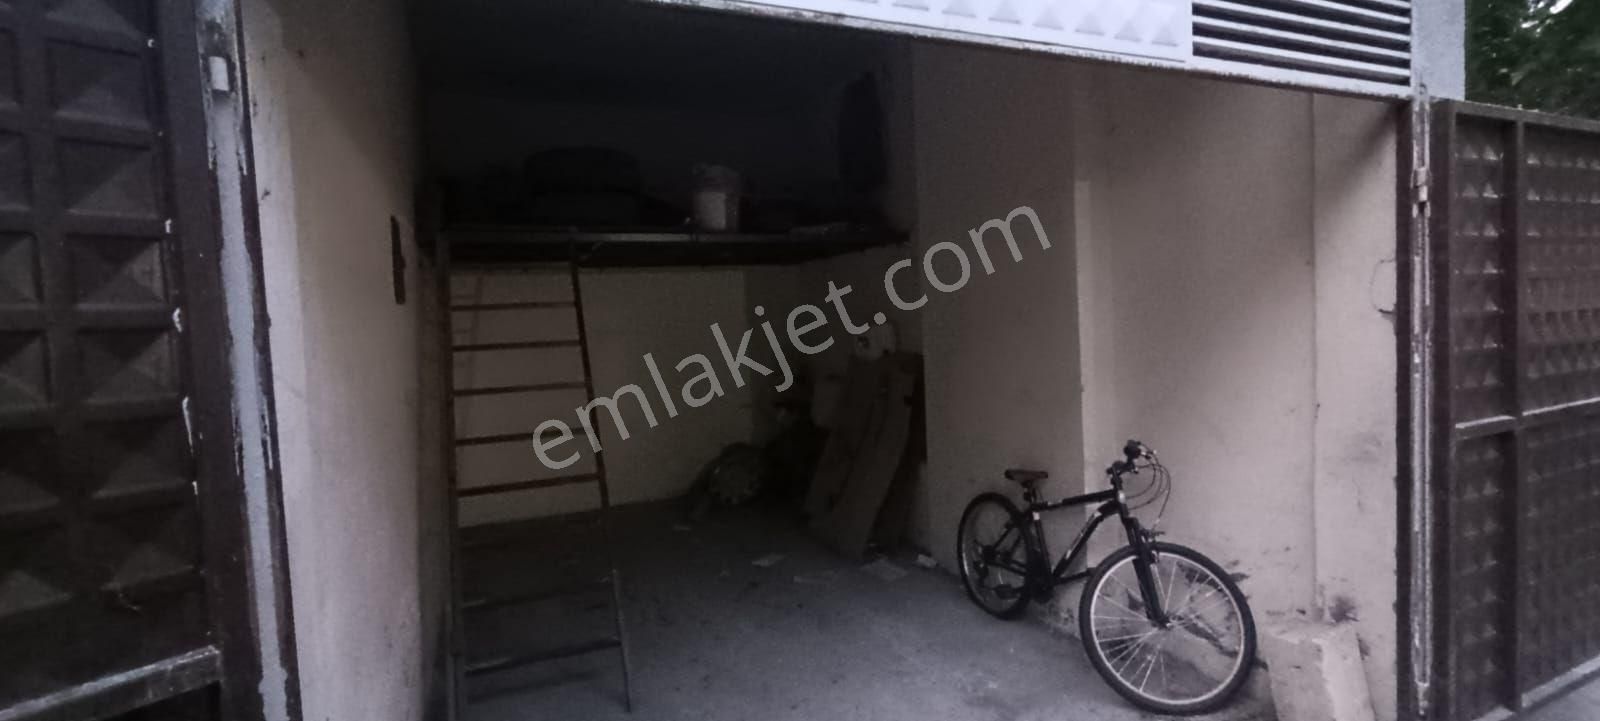 Şahinbey Güneykent Satılık Dükkan & Mağaza Hazar emlaktan satilik garaj